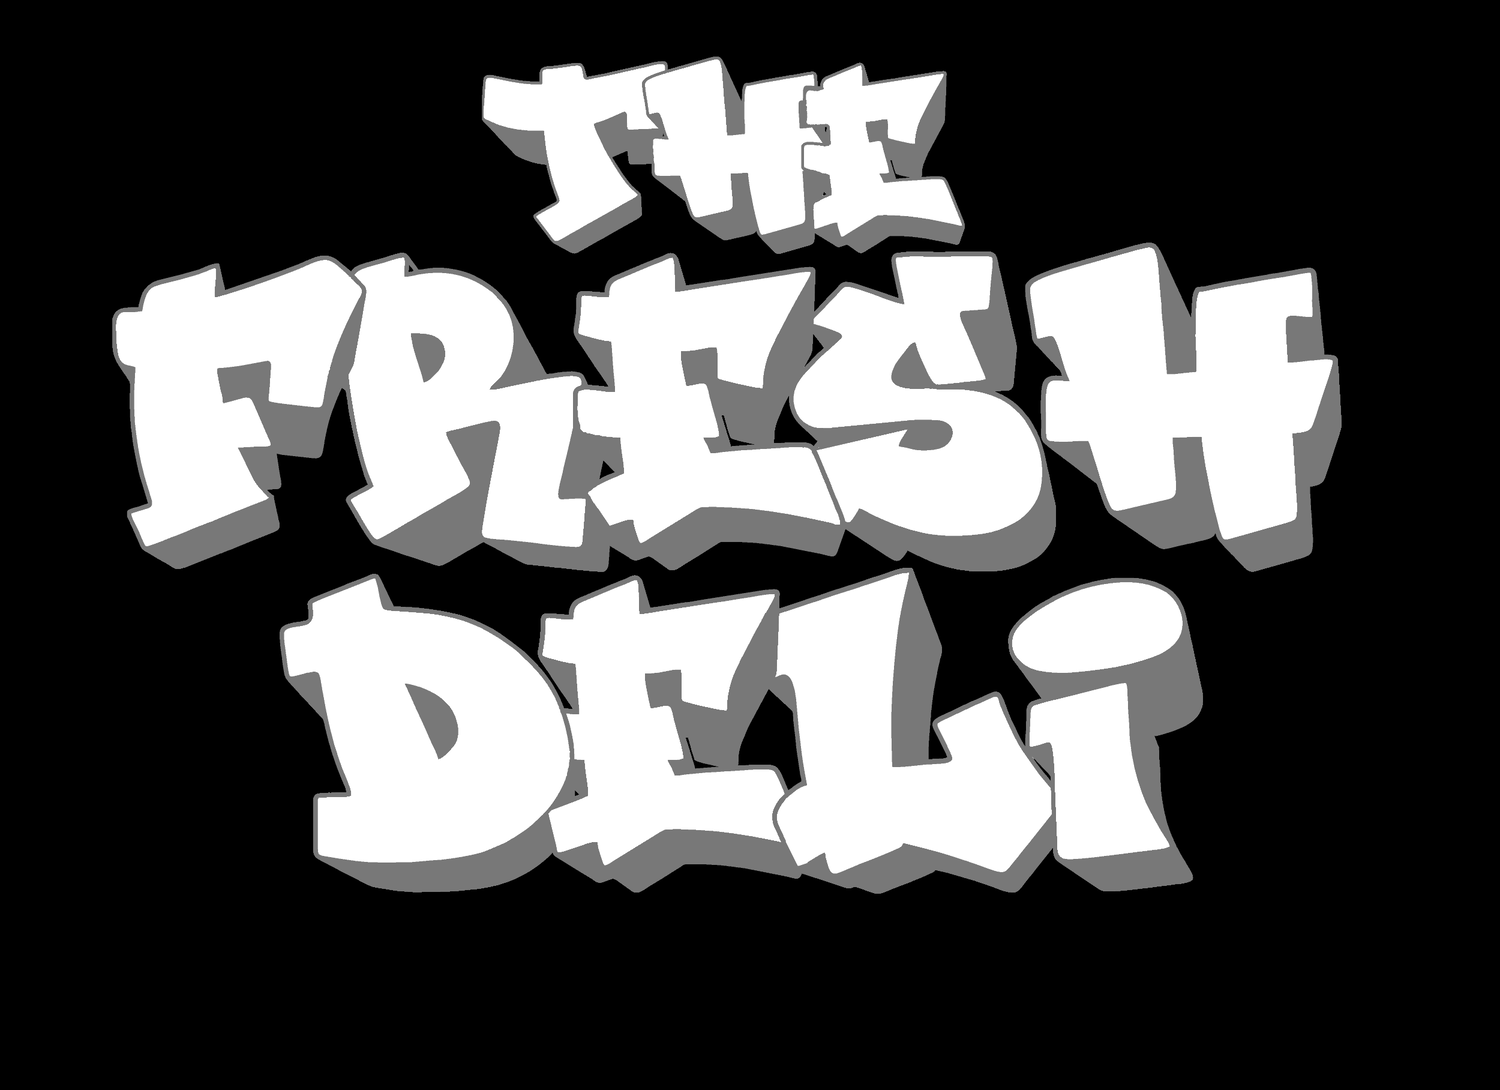 The Fresh Deli